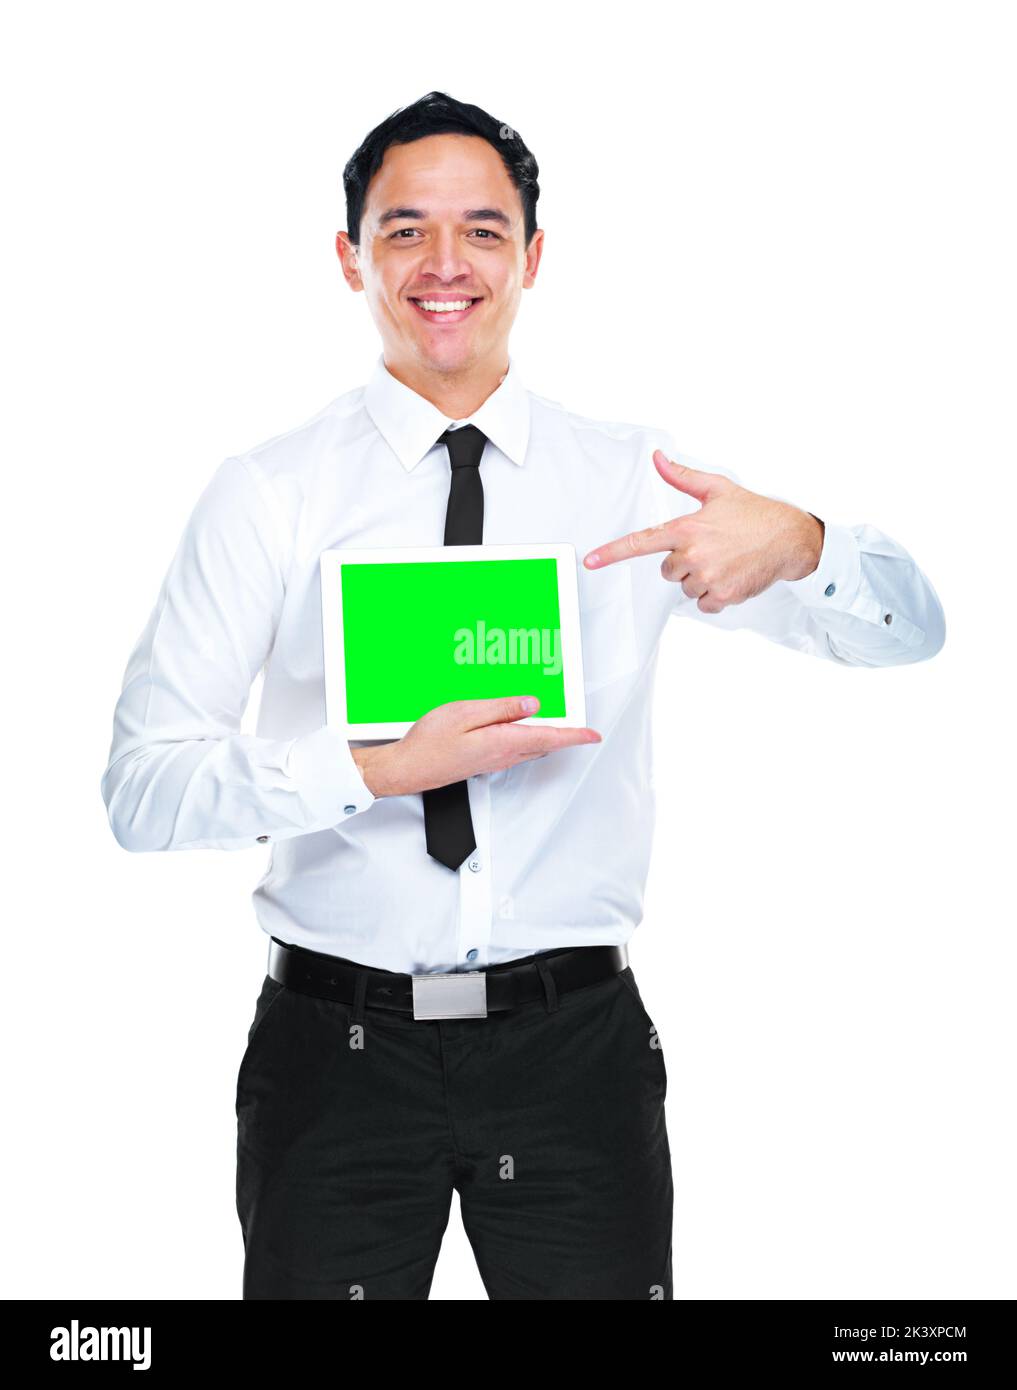 Placez votre message ici. Un jeune homme d'affaires tenant une tablette avec un écran vert. Banque D'Images